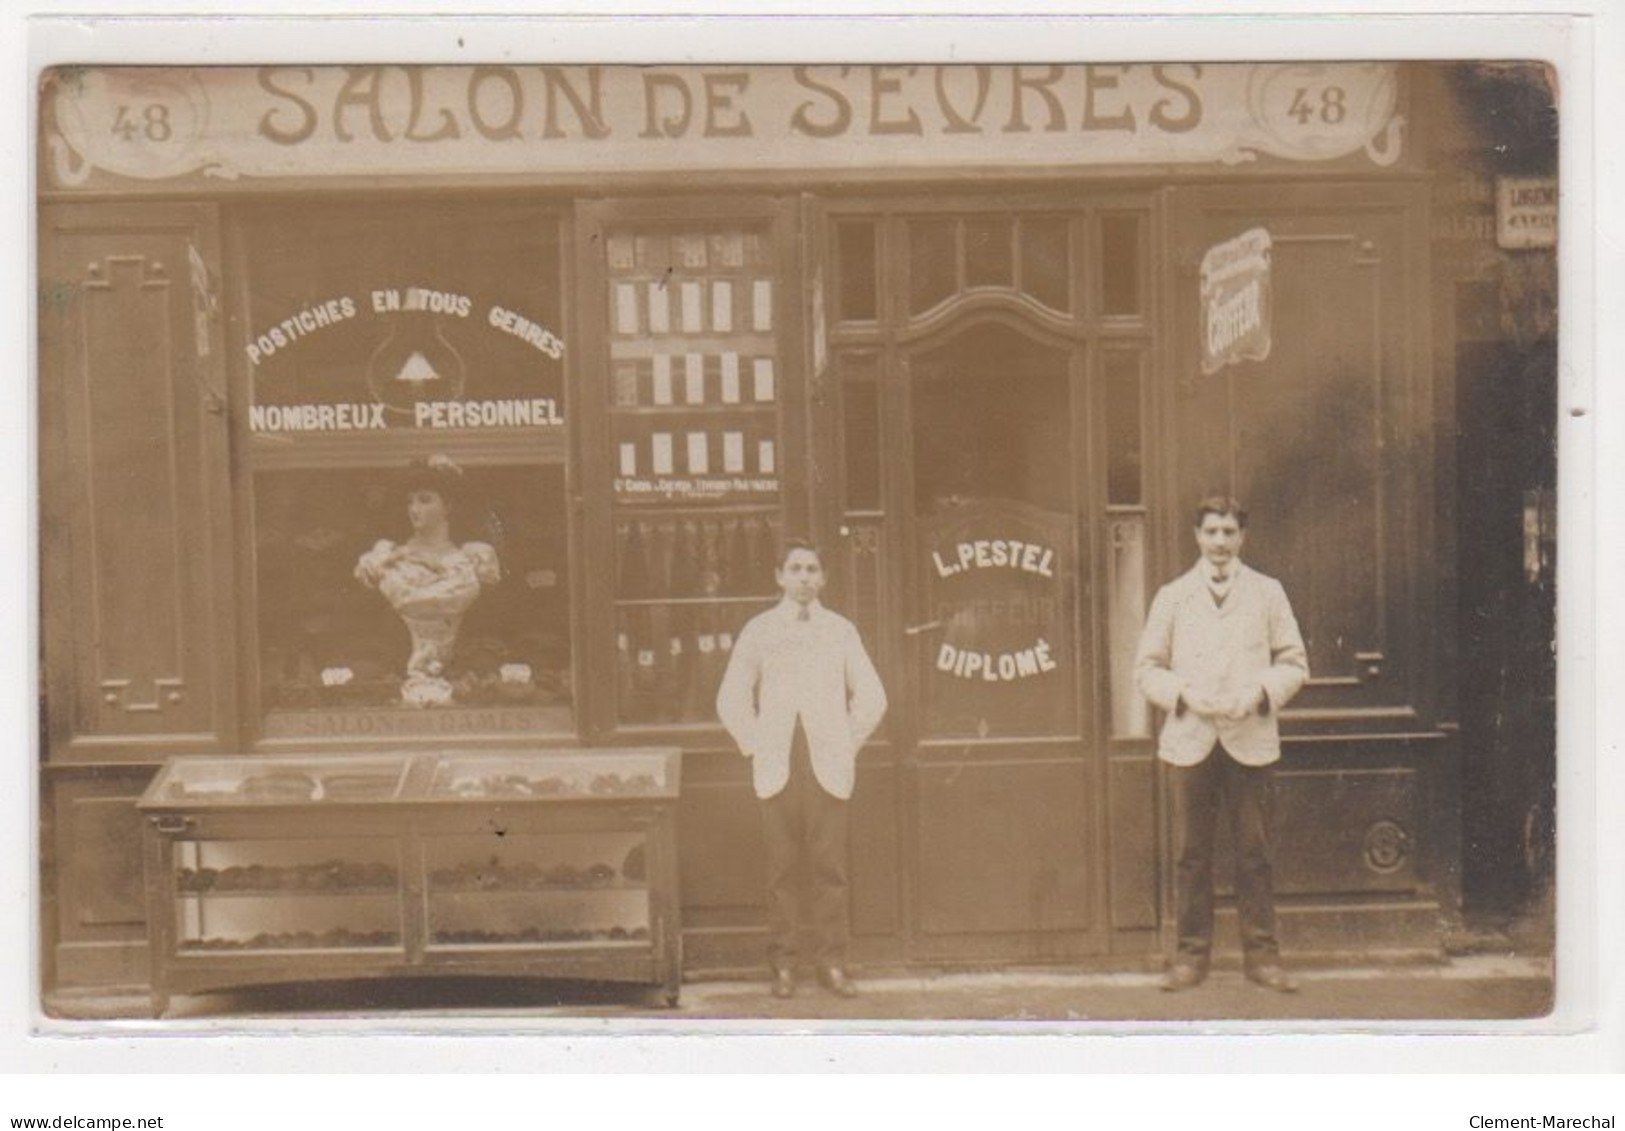 PARIS : Carte Photo Du Salon De Coiffure De Sevres (PESTEL - Coiffeur) Au 48 Rue De Sevres - Bon état - Distrito: 07